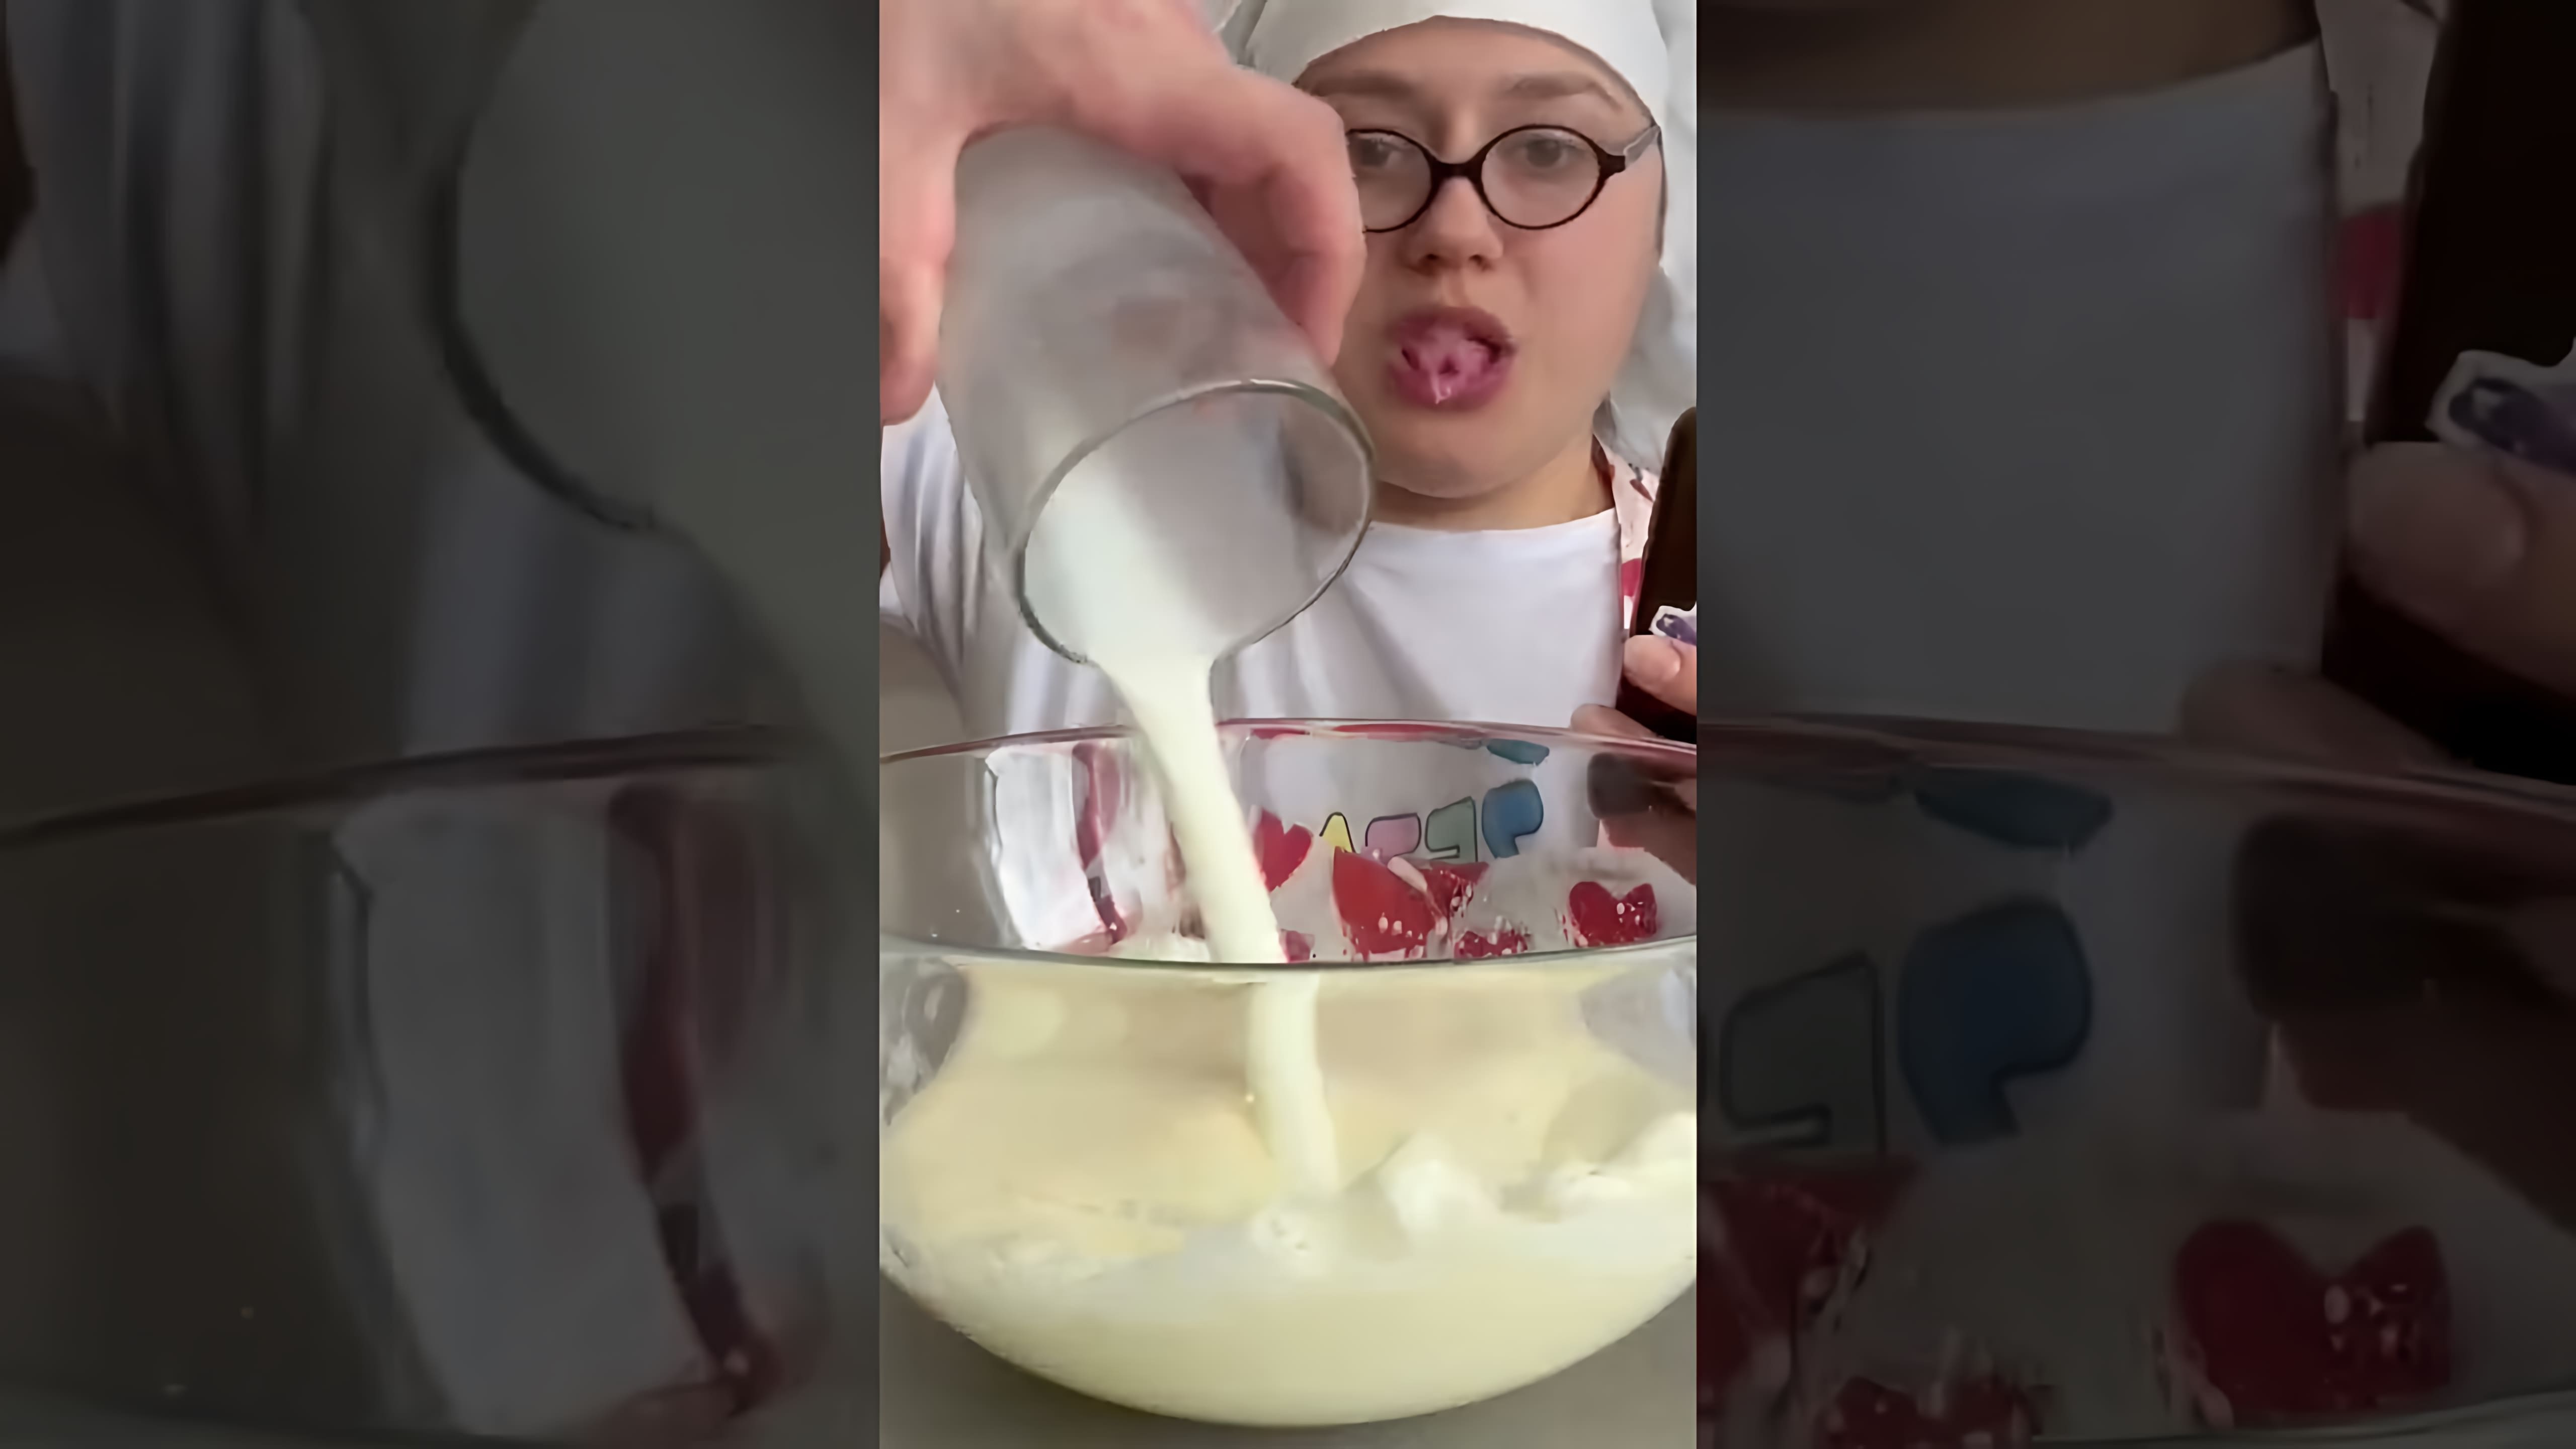 "Самый лёгкий рецепт панкейков с начинкой" - это видео-ролик, который показывает, как приготовить вкусные панкейки с начинкой